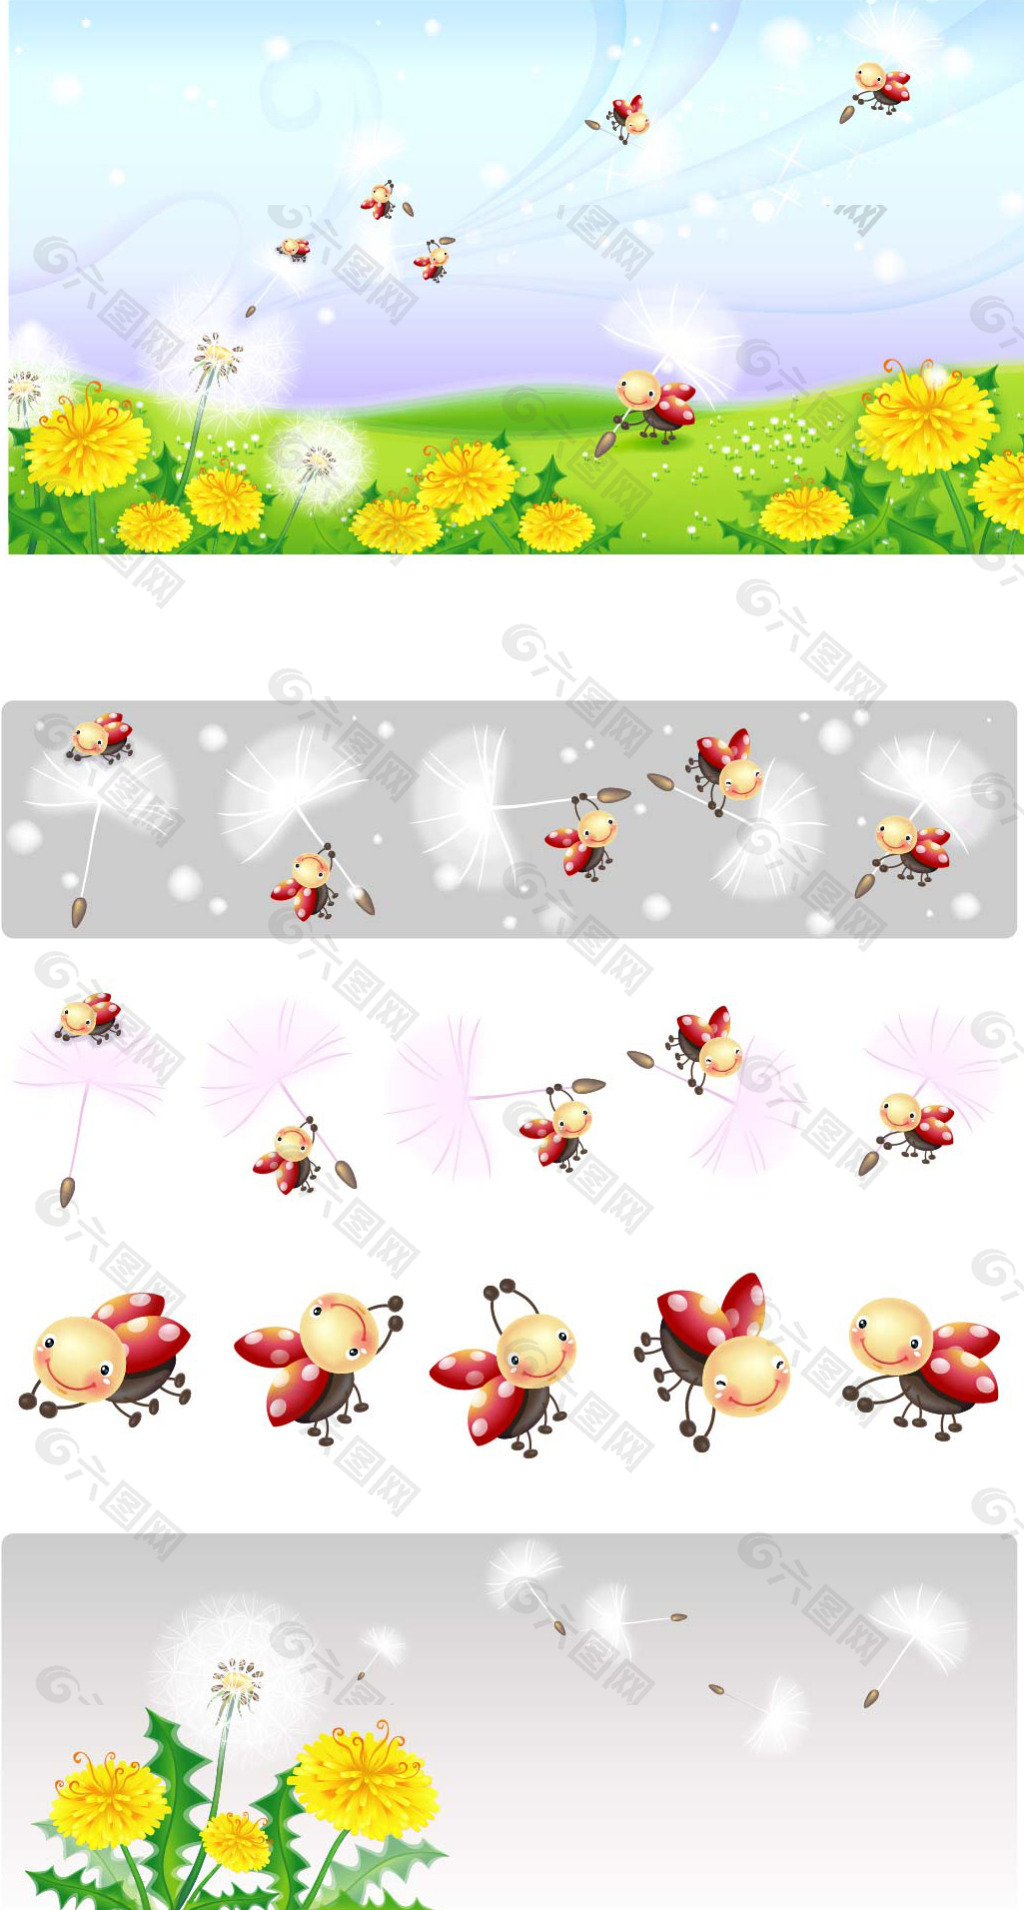 可爱小瓢虫与花朵矢量素材